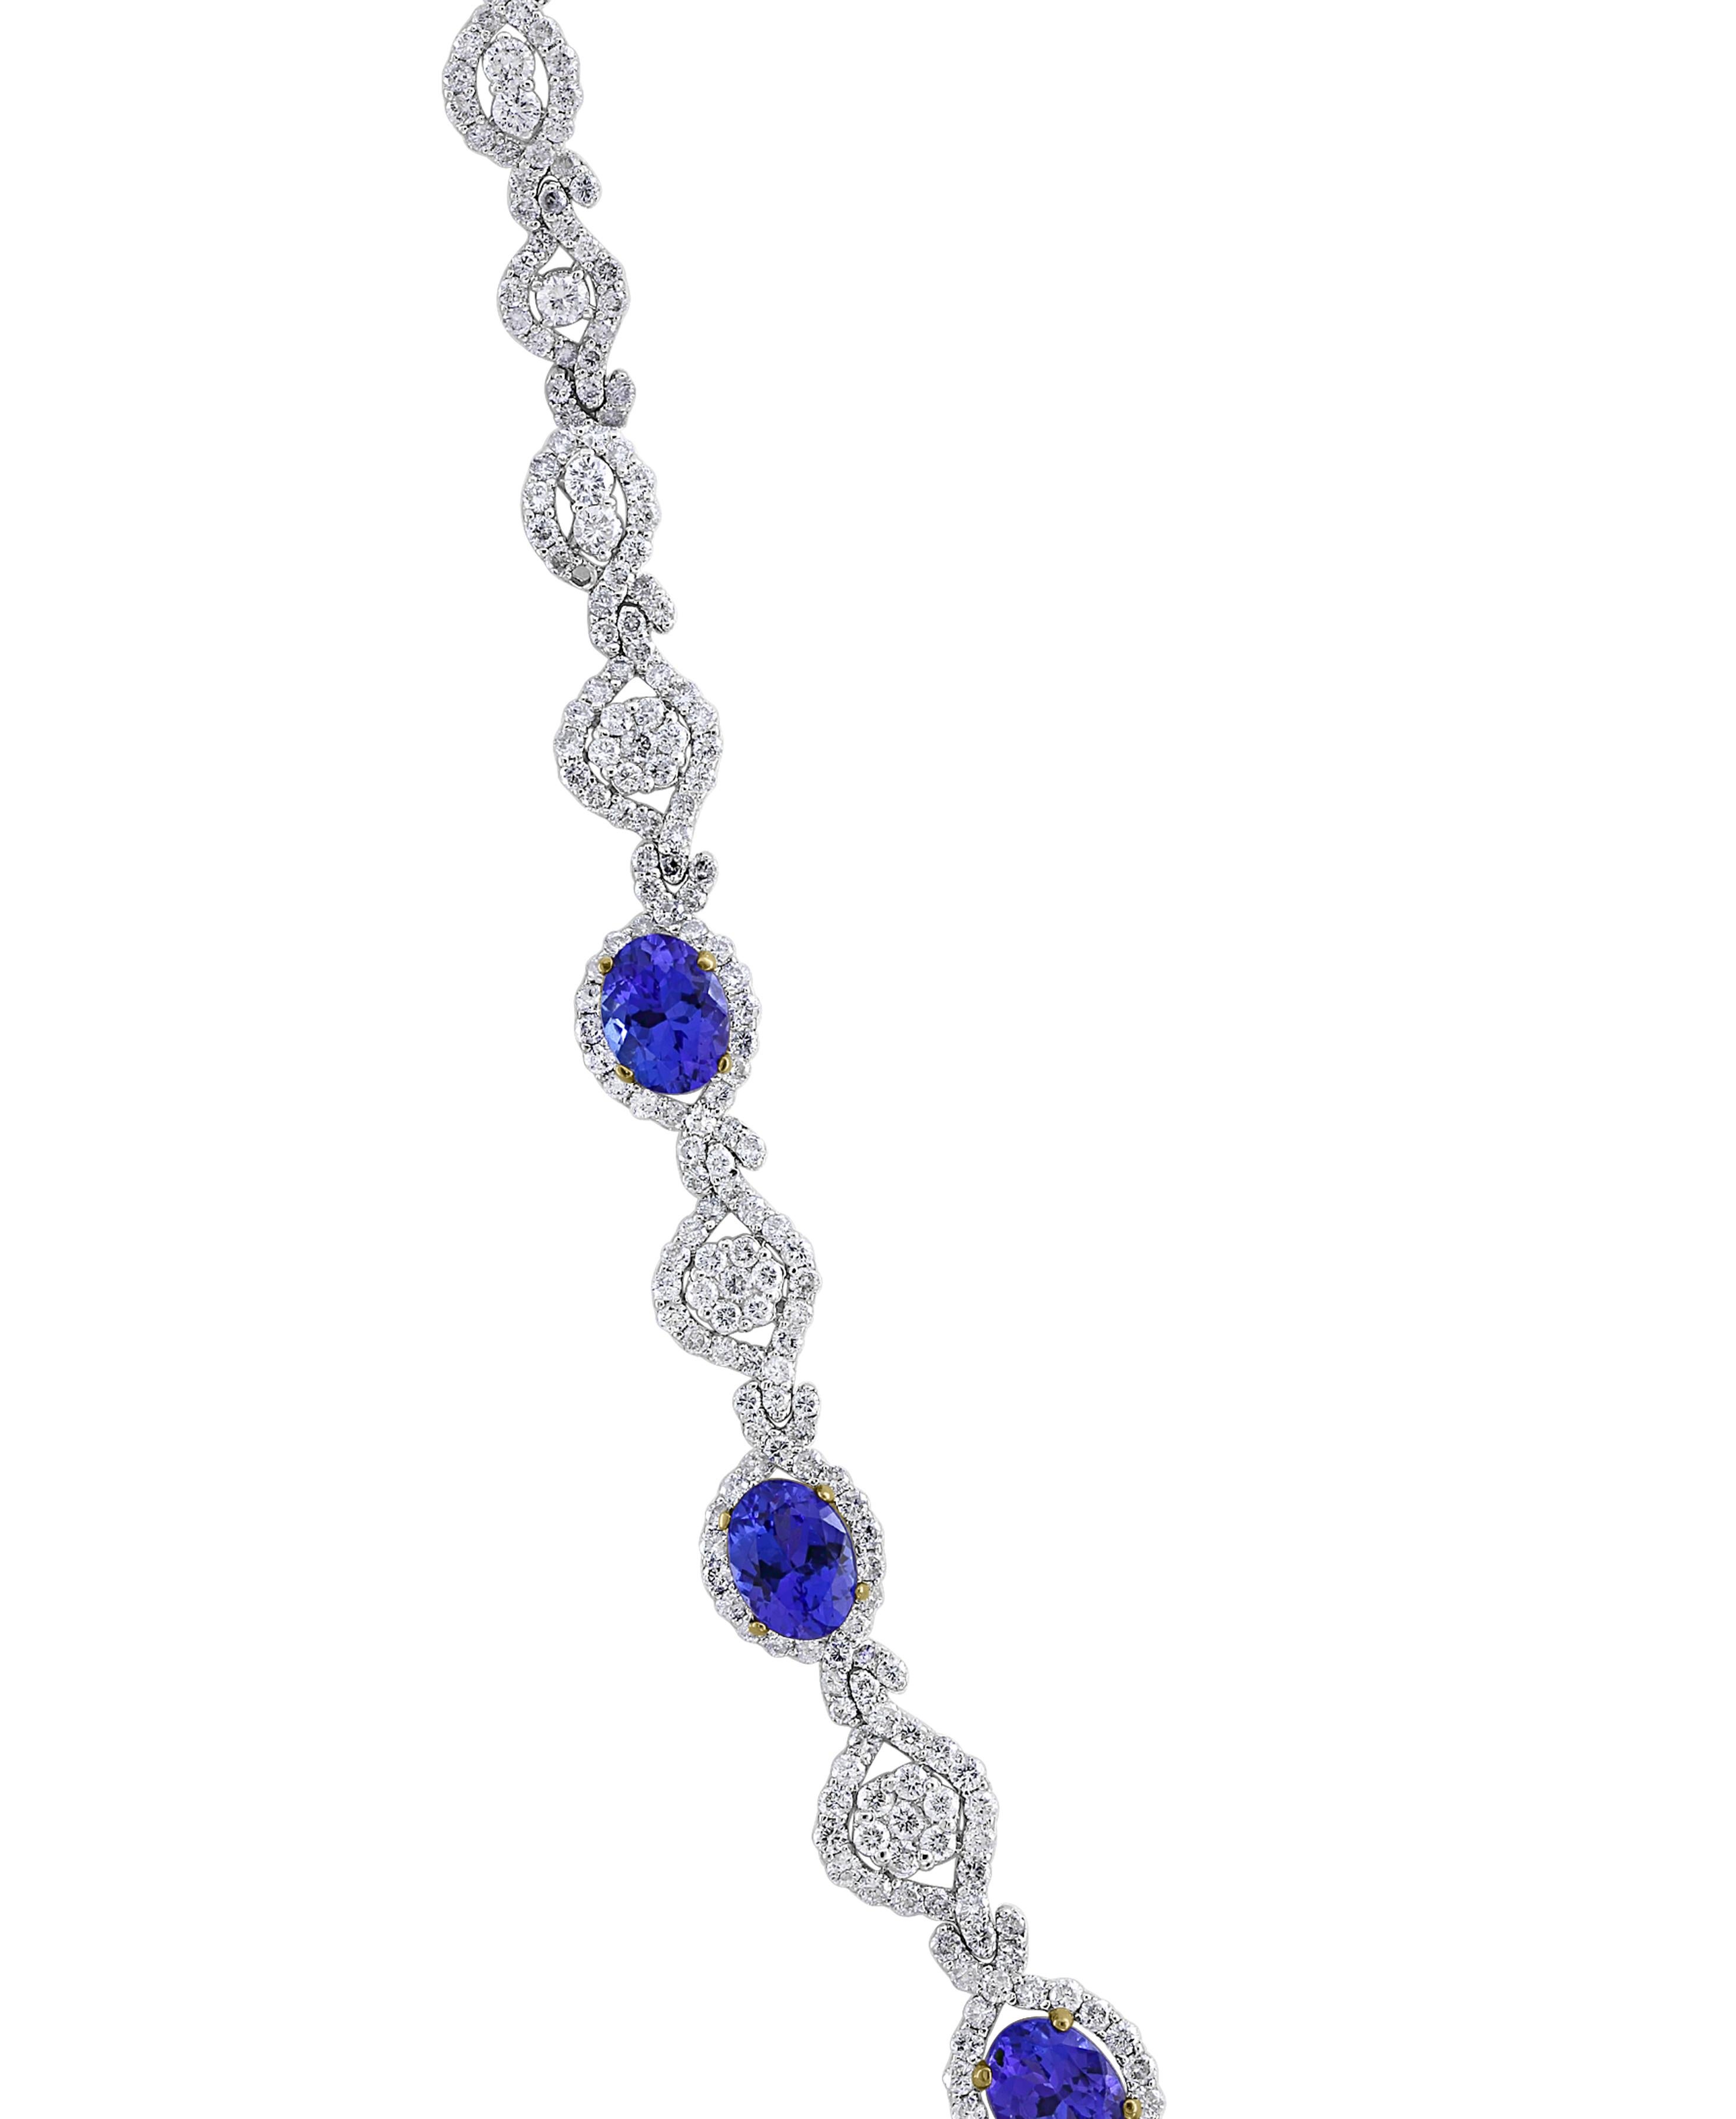 11 carat diamond necklace